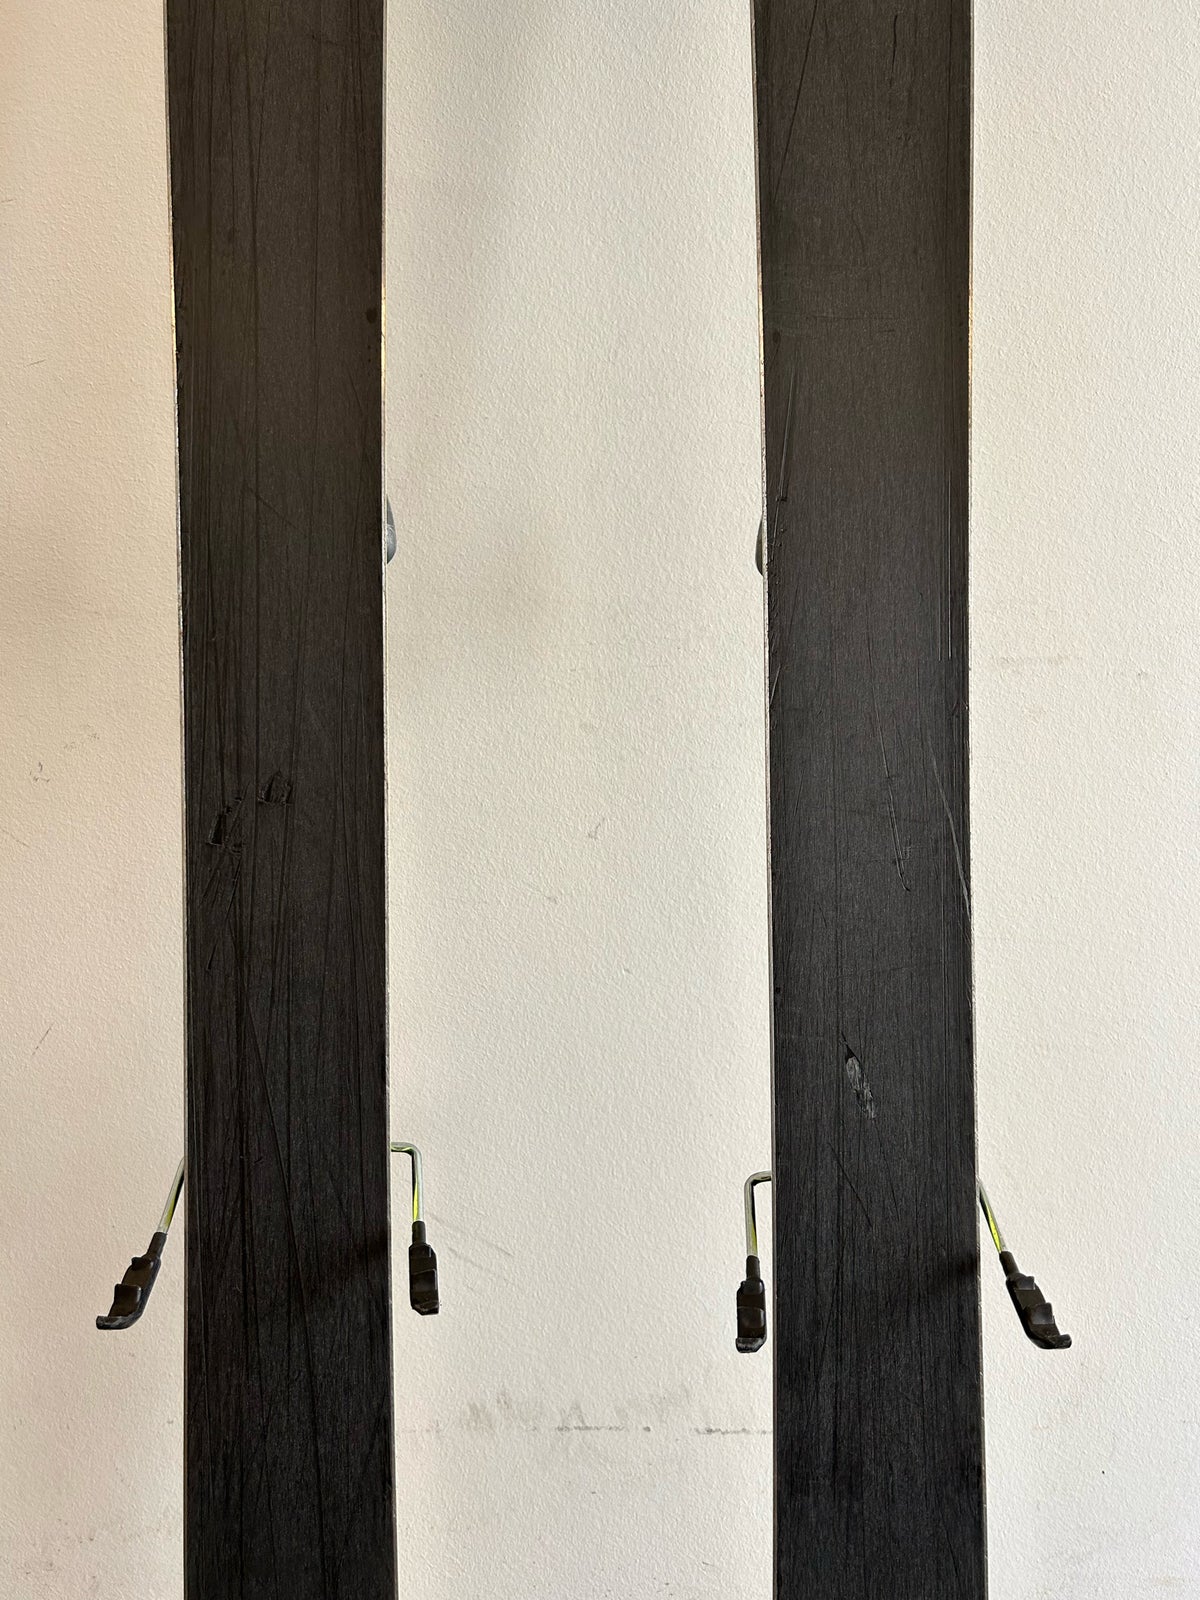 Twin-tip ski, Volkl Bridge 2012/2013, str. 179 cm